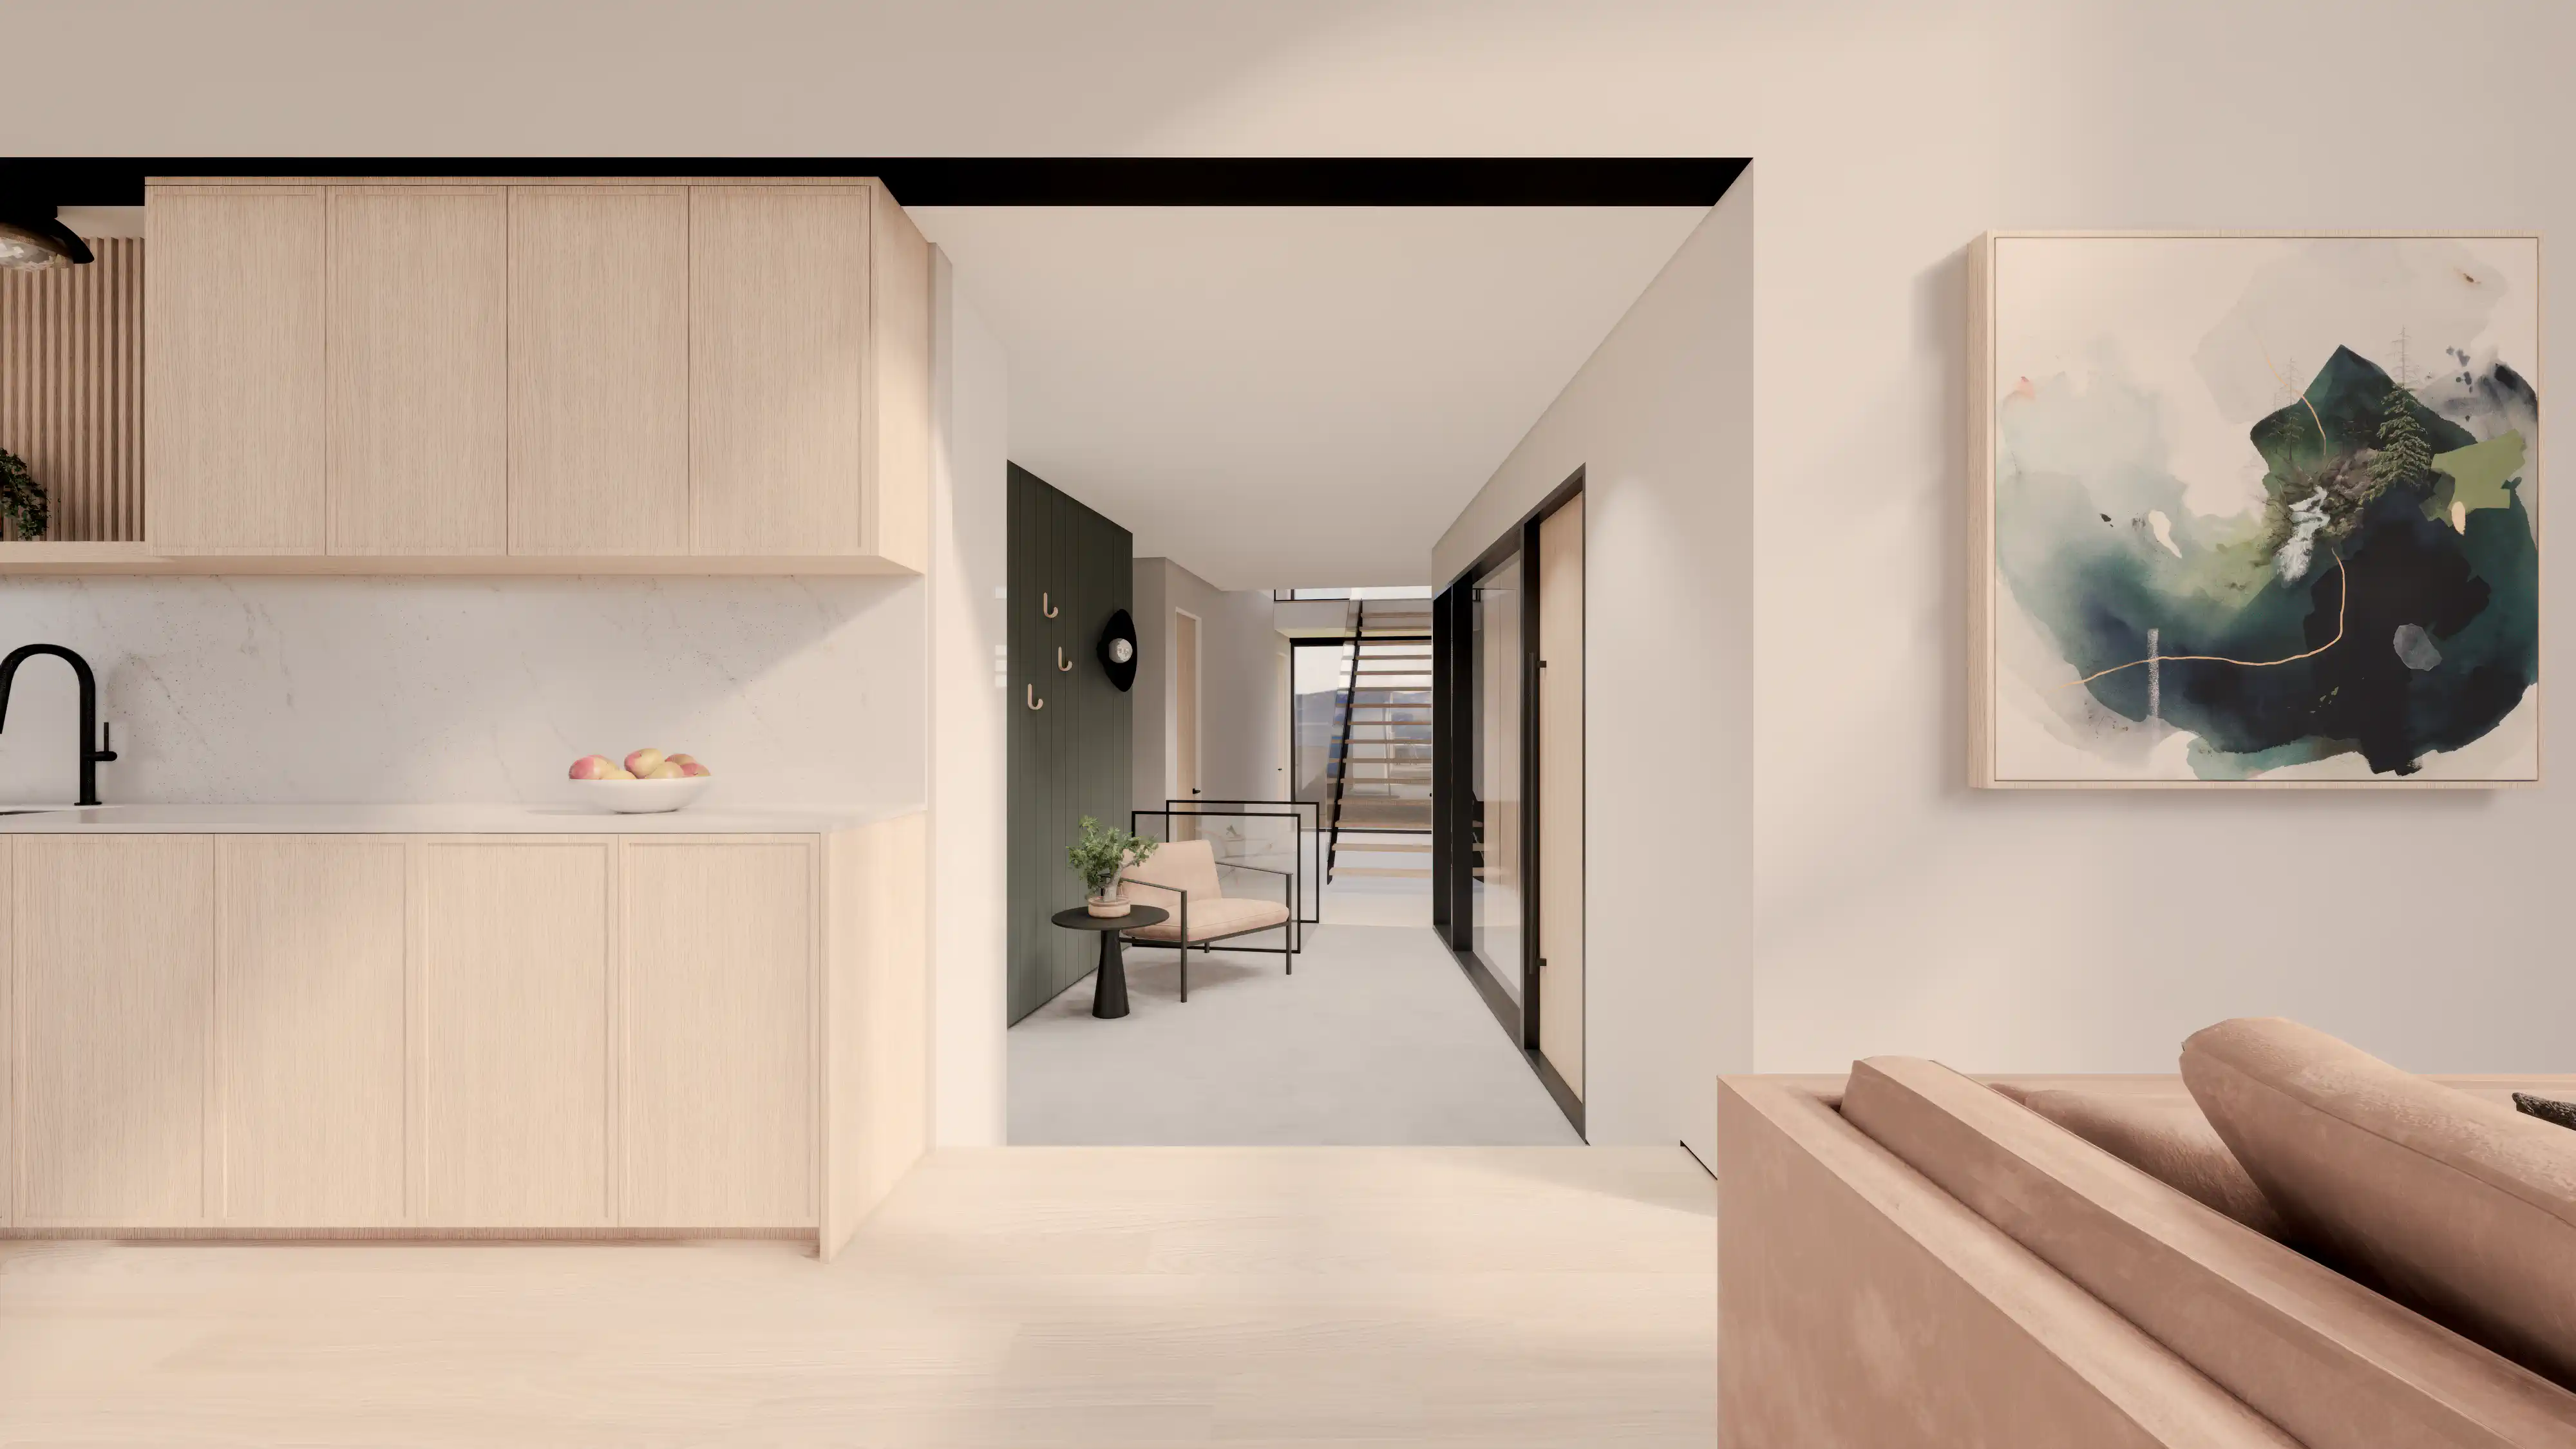 Espace de vie contemporain avec des armoires de cuisine en bois, une œuvre d'art murale abstraite et une vue vers un couloir minimaliste, intérieur signé Sarah Brown Design